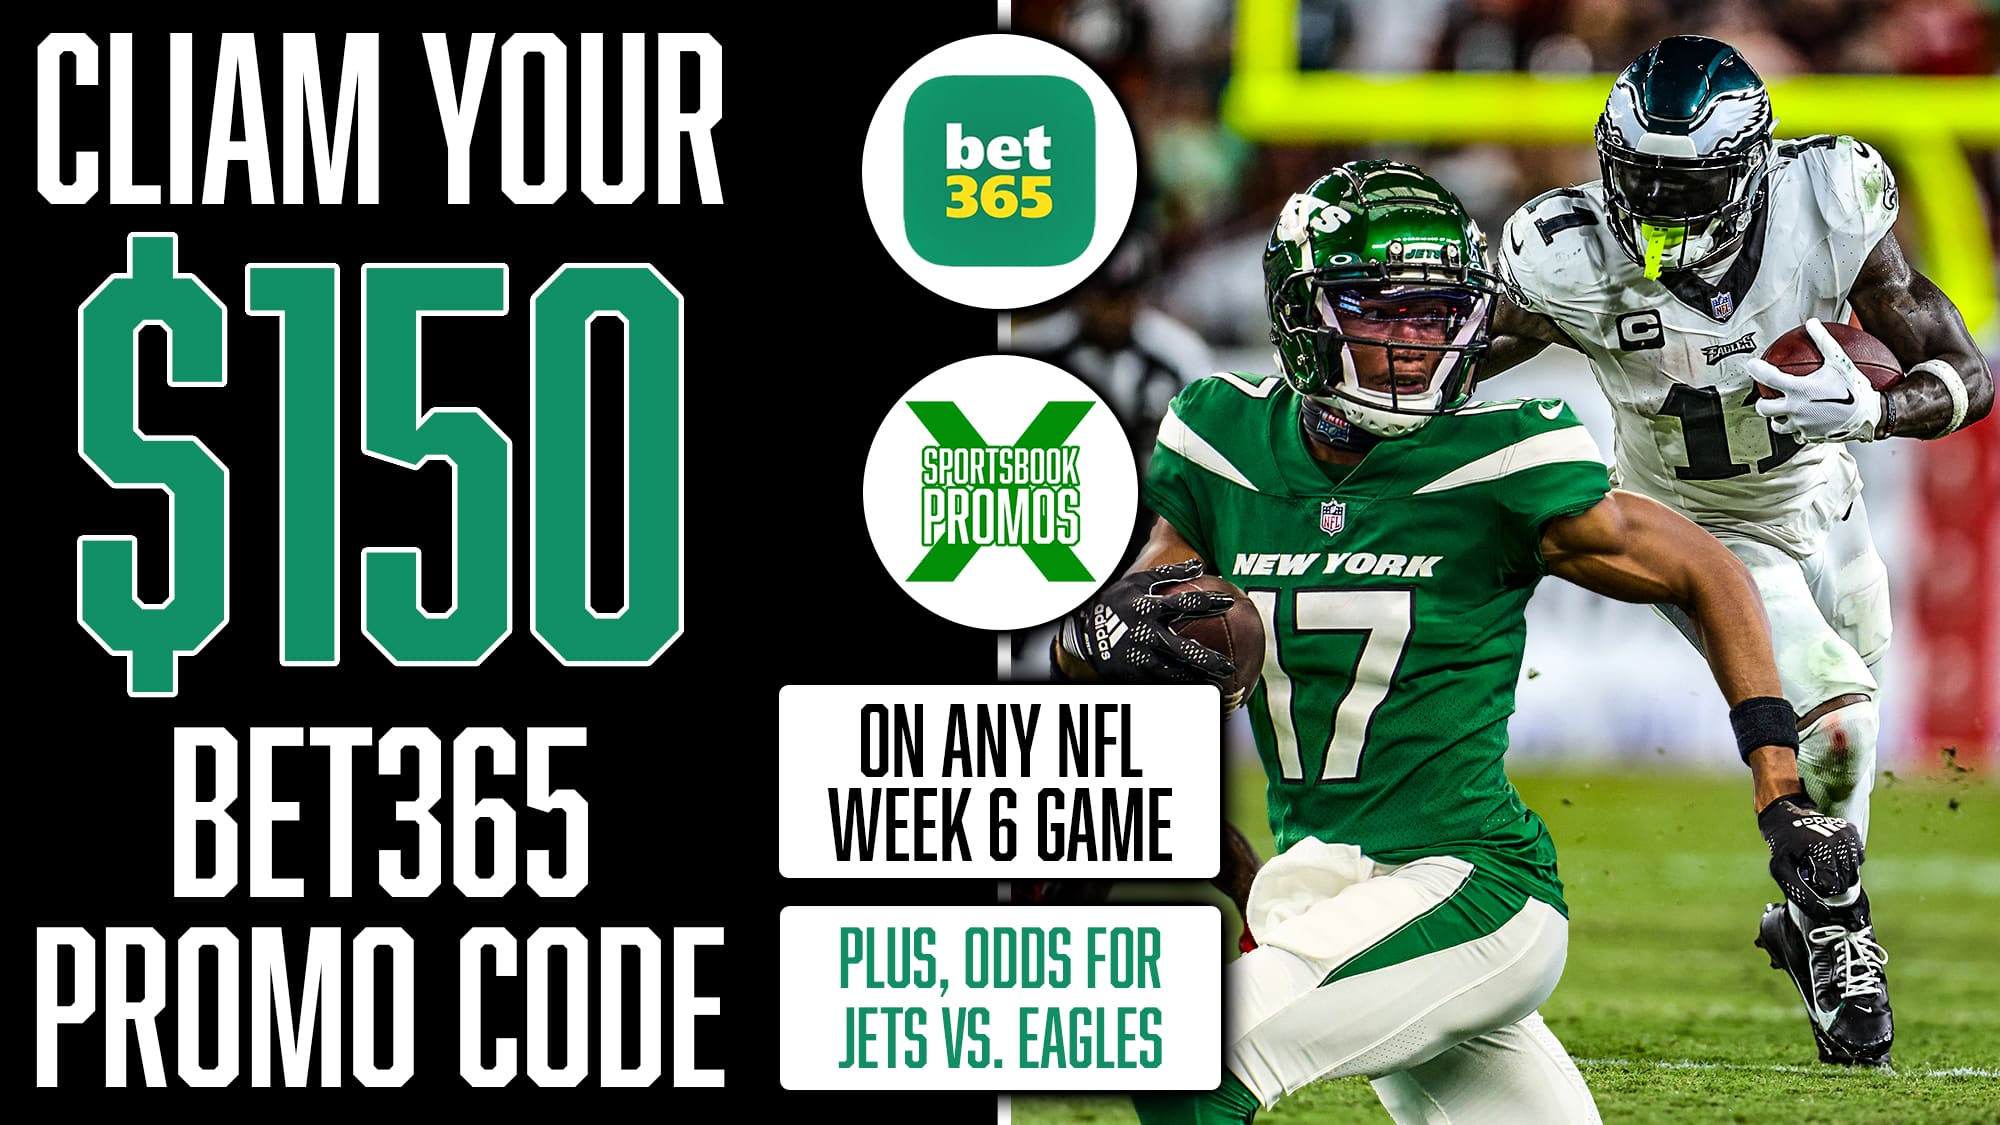 bet365 Promo Code, Get $150 Sportsbook Bonus, NFL Week 6